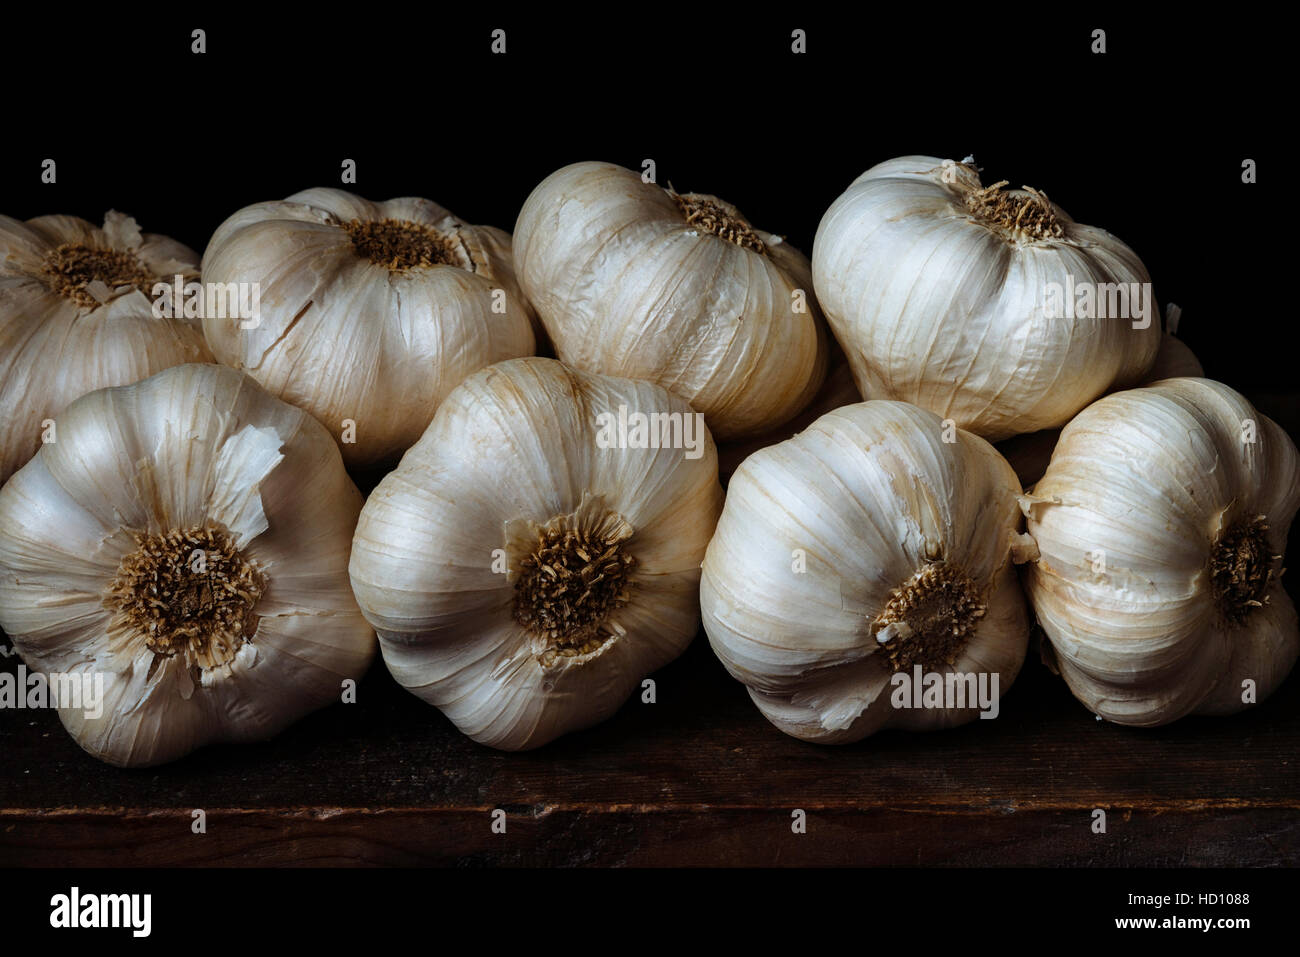 Dettaglio di un mucchio di teste d'aglio contro uno sfondo scuro Foto Stock